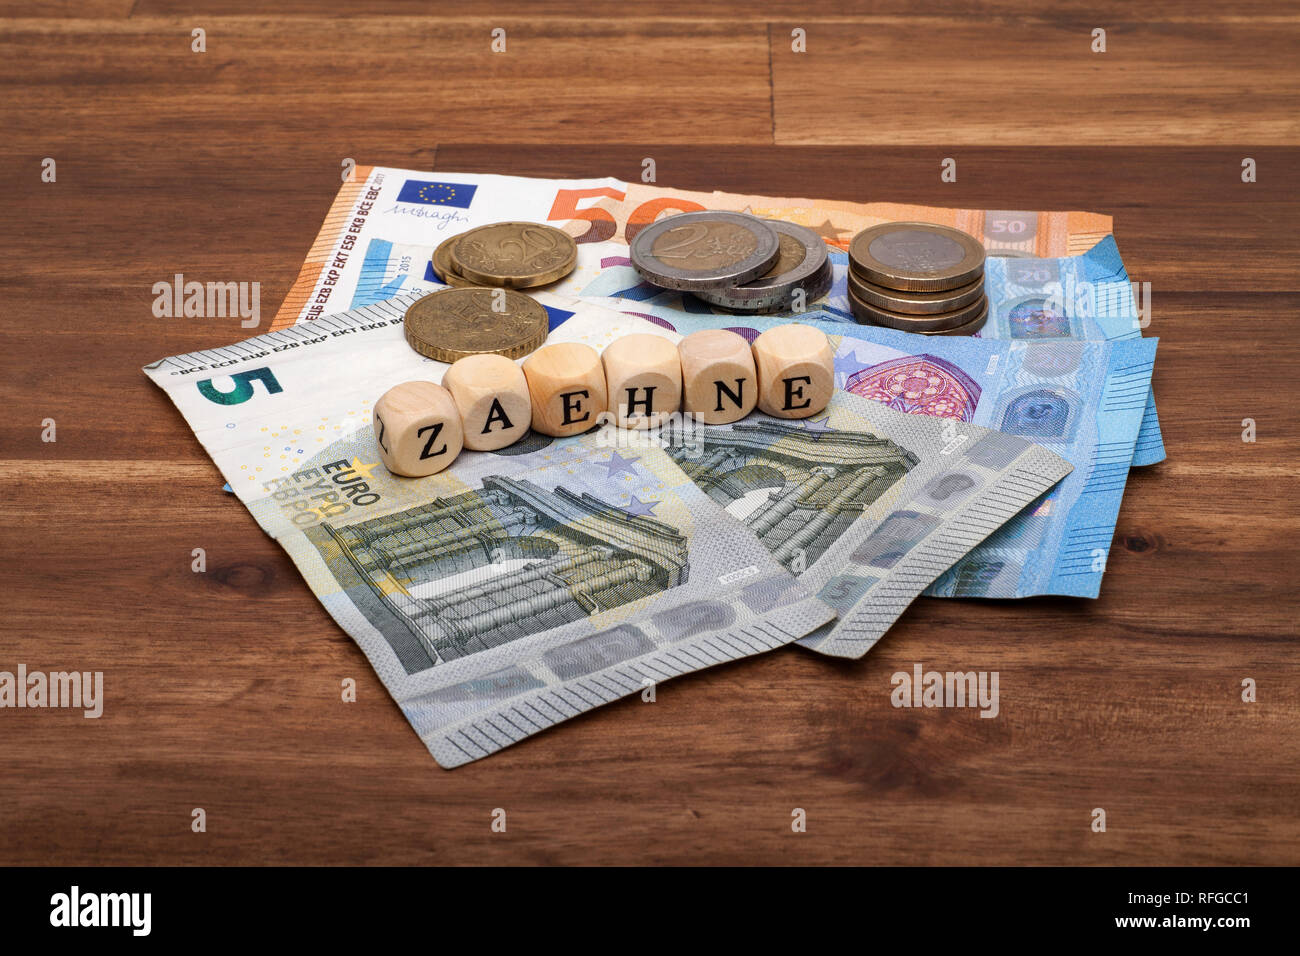 Die Euro Geldscheine und Münzen liegen auf dem Tisch mit dem Wort Zähne Stock Photo